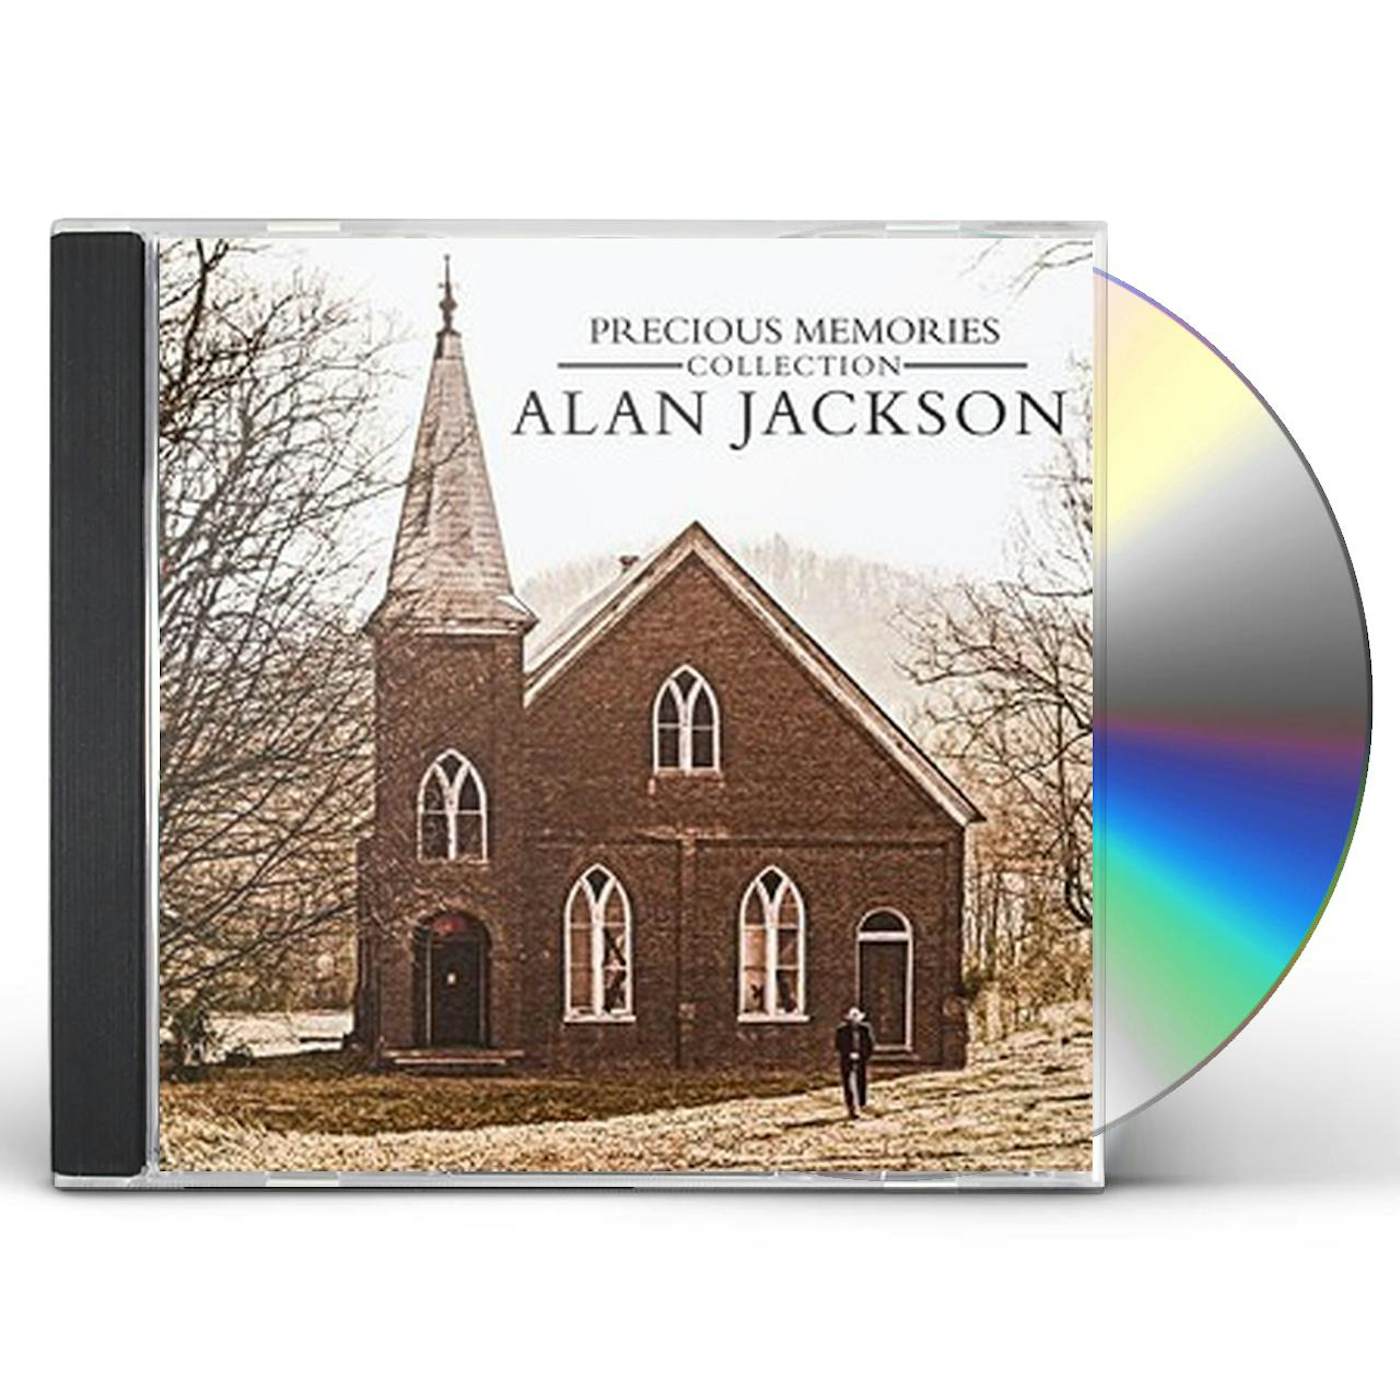 Alan Jackson PRECIOUS MEMORIES COLLECTION CD